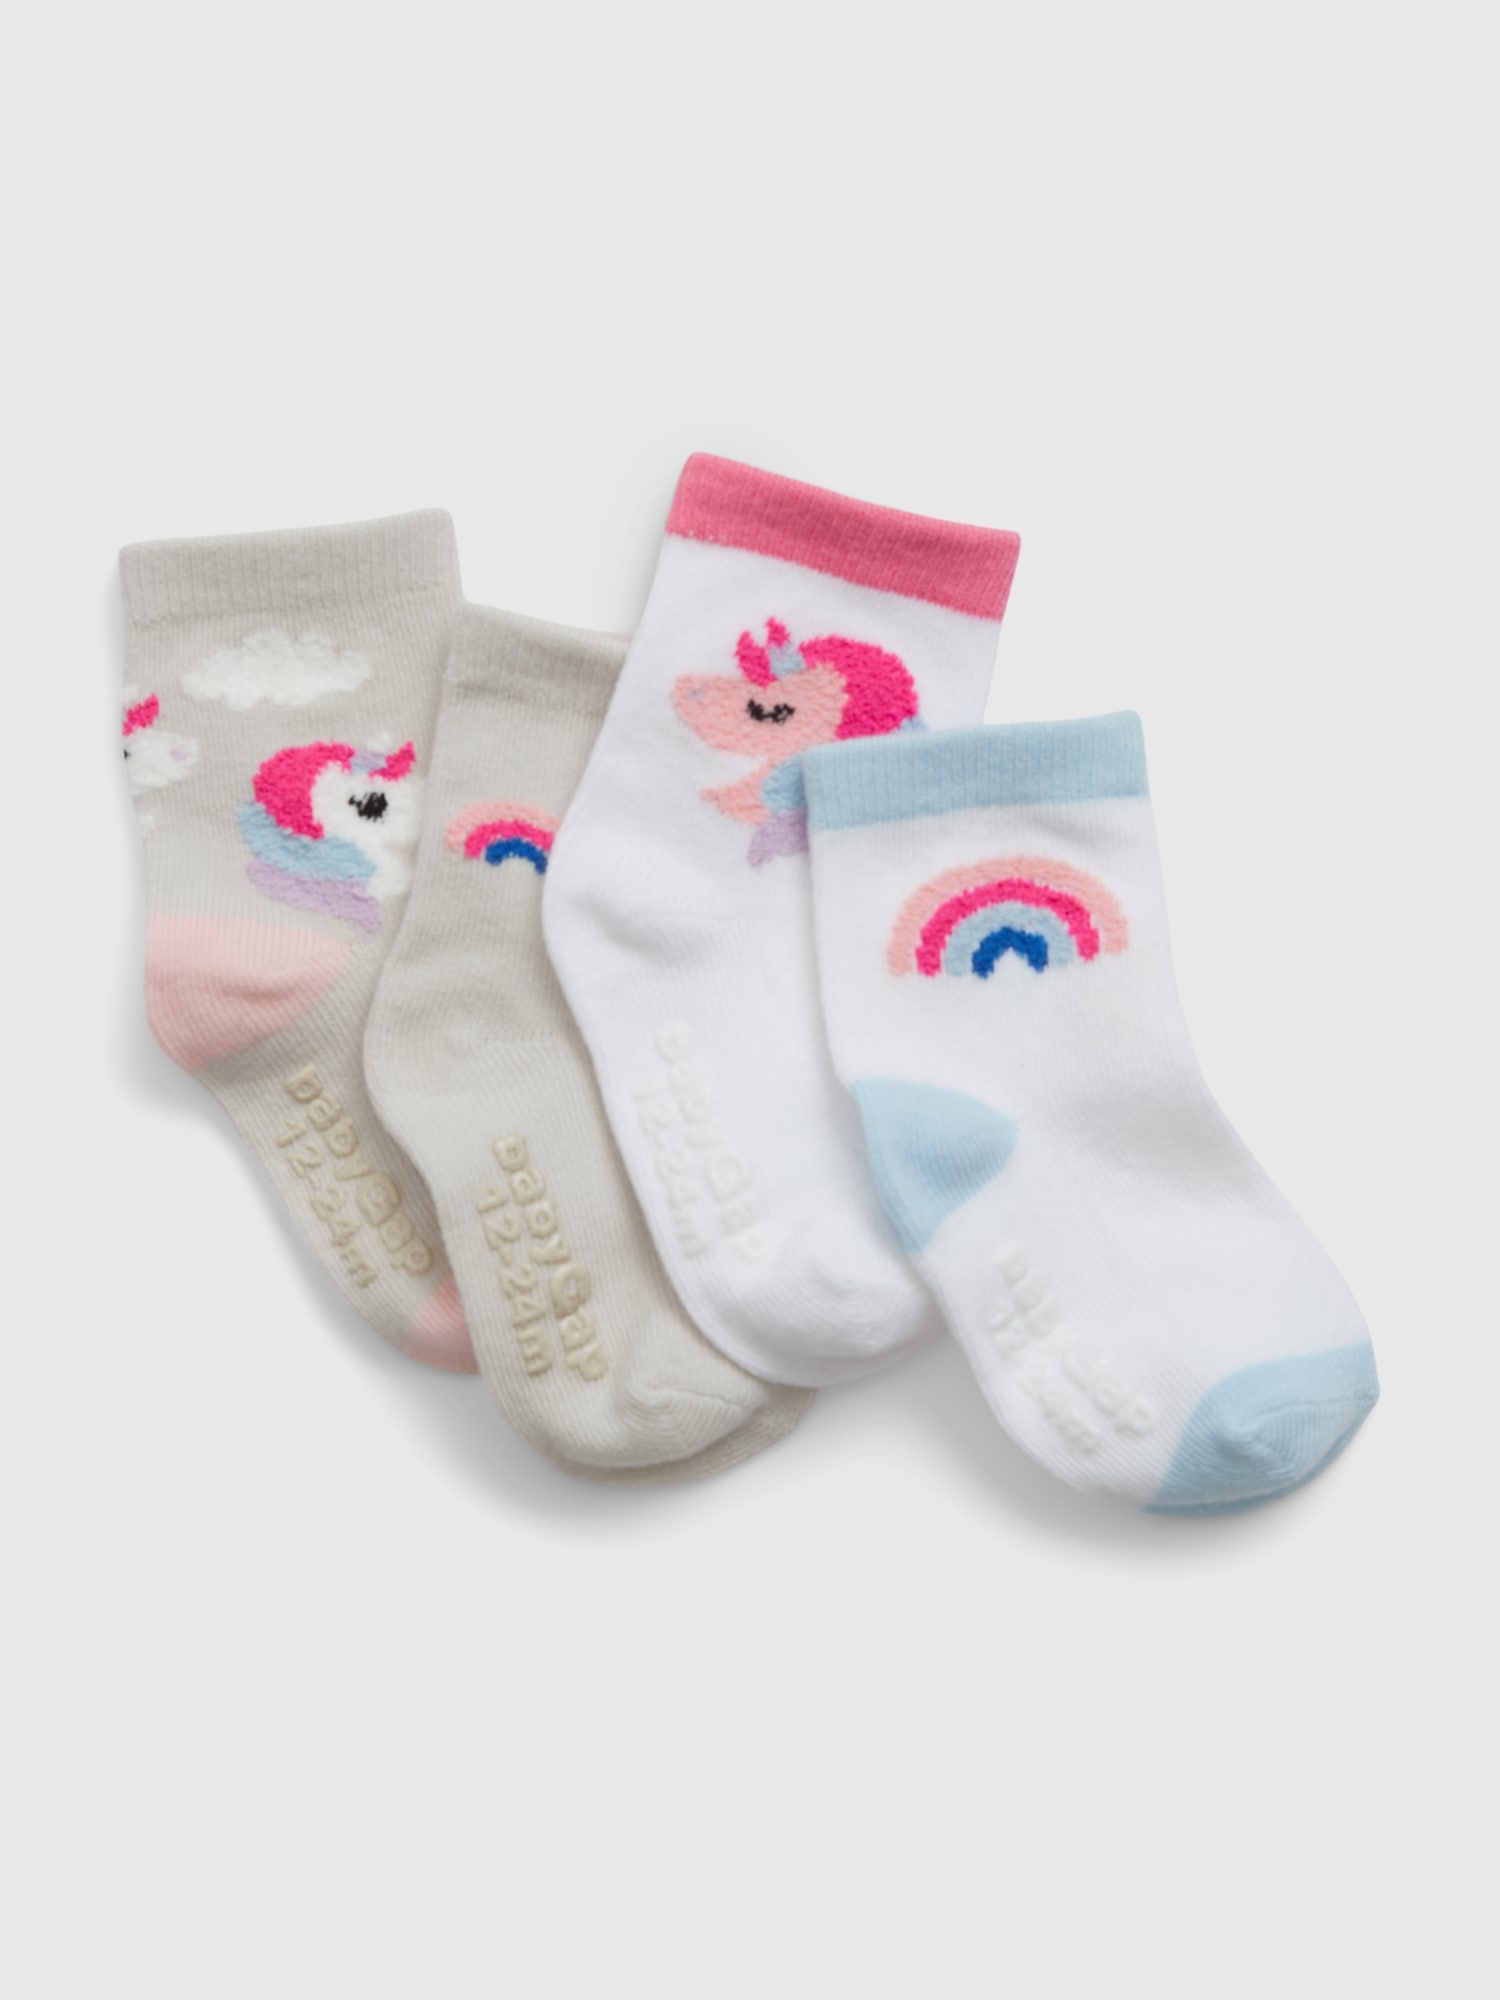 GAP Children's Socks, 4 Pairs - Girls